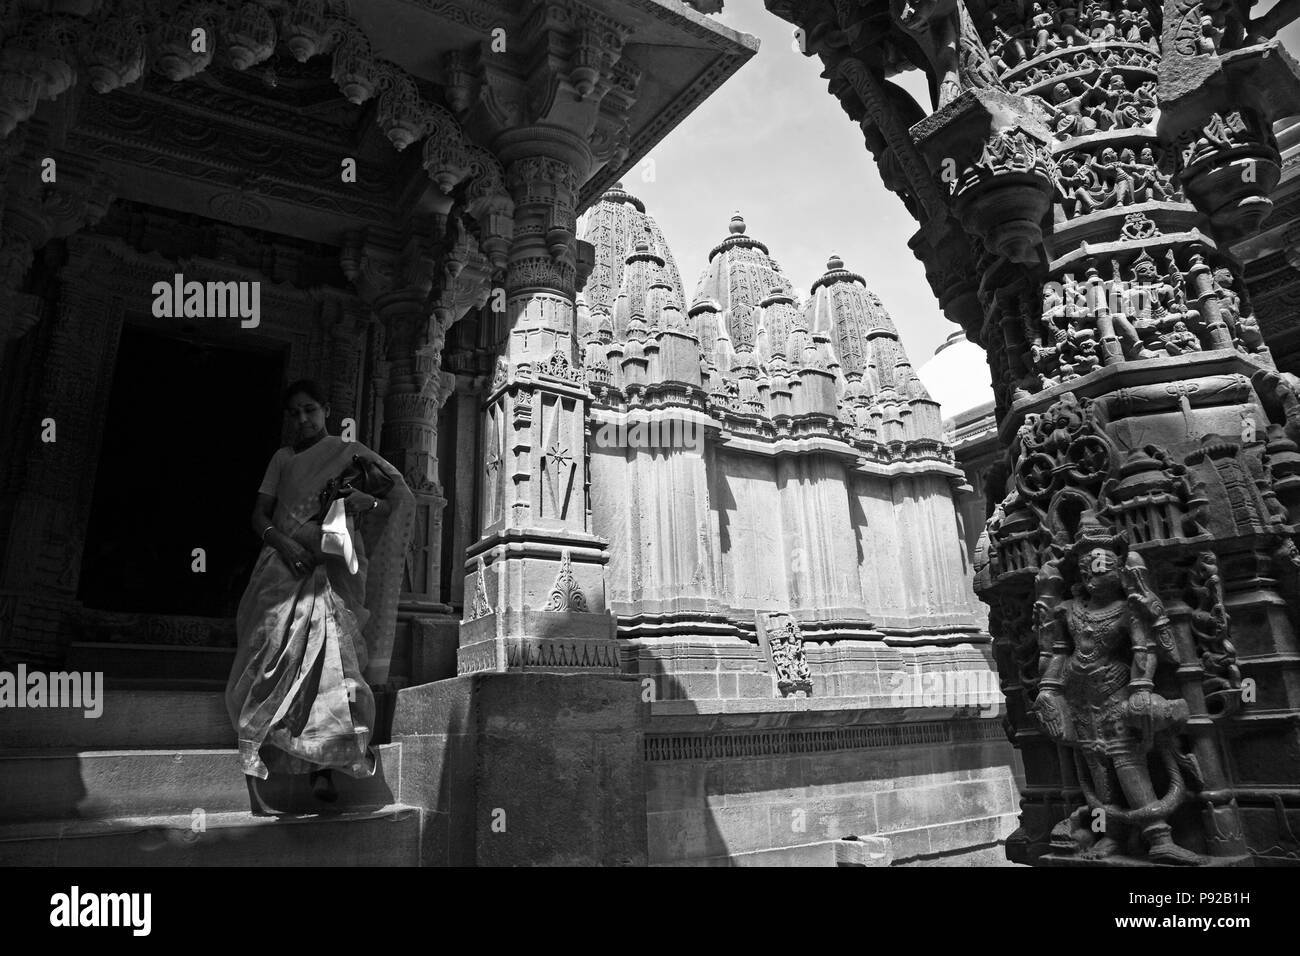 Entrata del CHANDRAPRABHU tempio Jain come visto all'interno di Forte di Jaisalmer - Rajasthan, India Foto Stock